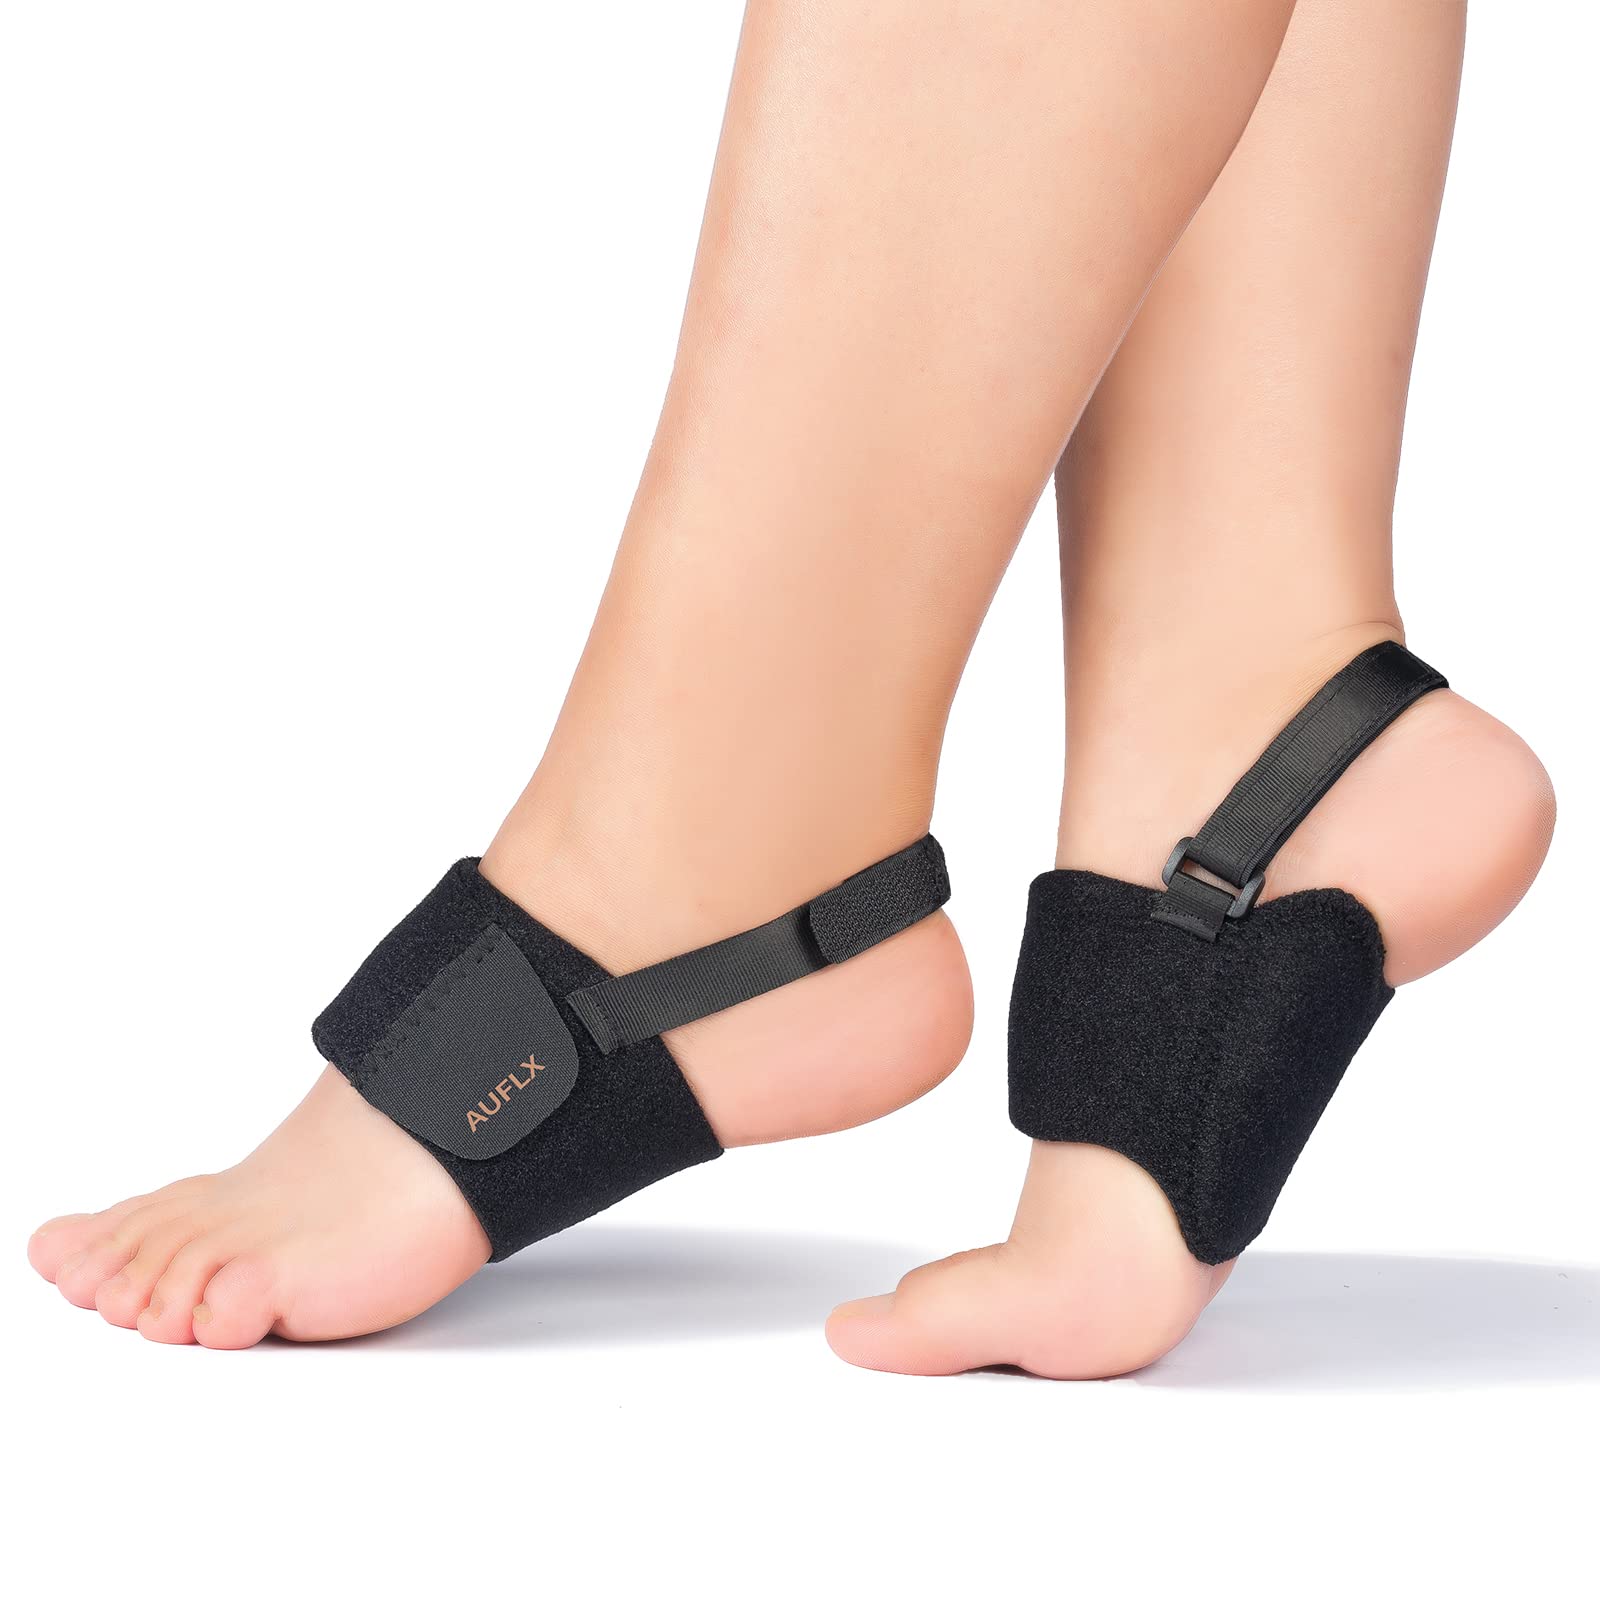 Buy Adjustable Foot Brace 2 Pairs Heel Cushion, Gel Heel Cups for Heel Pain  Plantar Fasciitis, Heel Pads Great for Aching Feet Online in India - Etsy